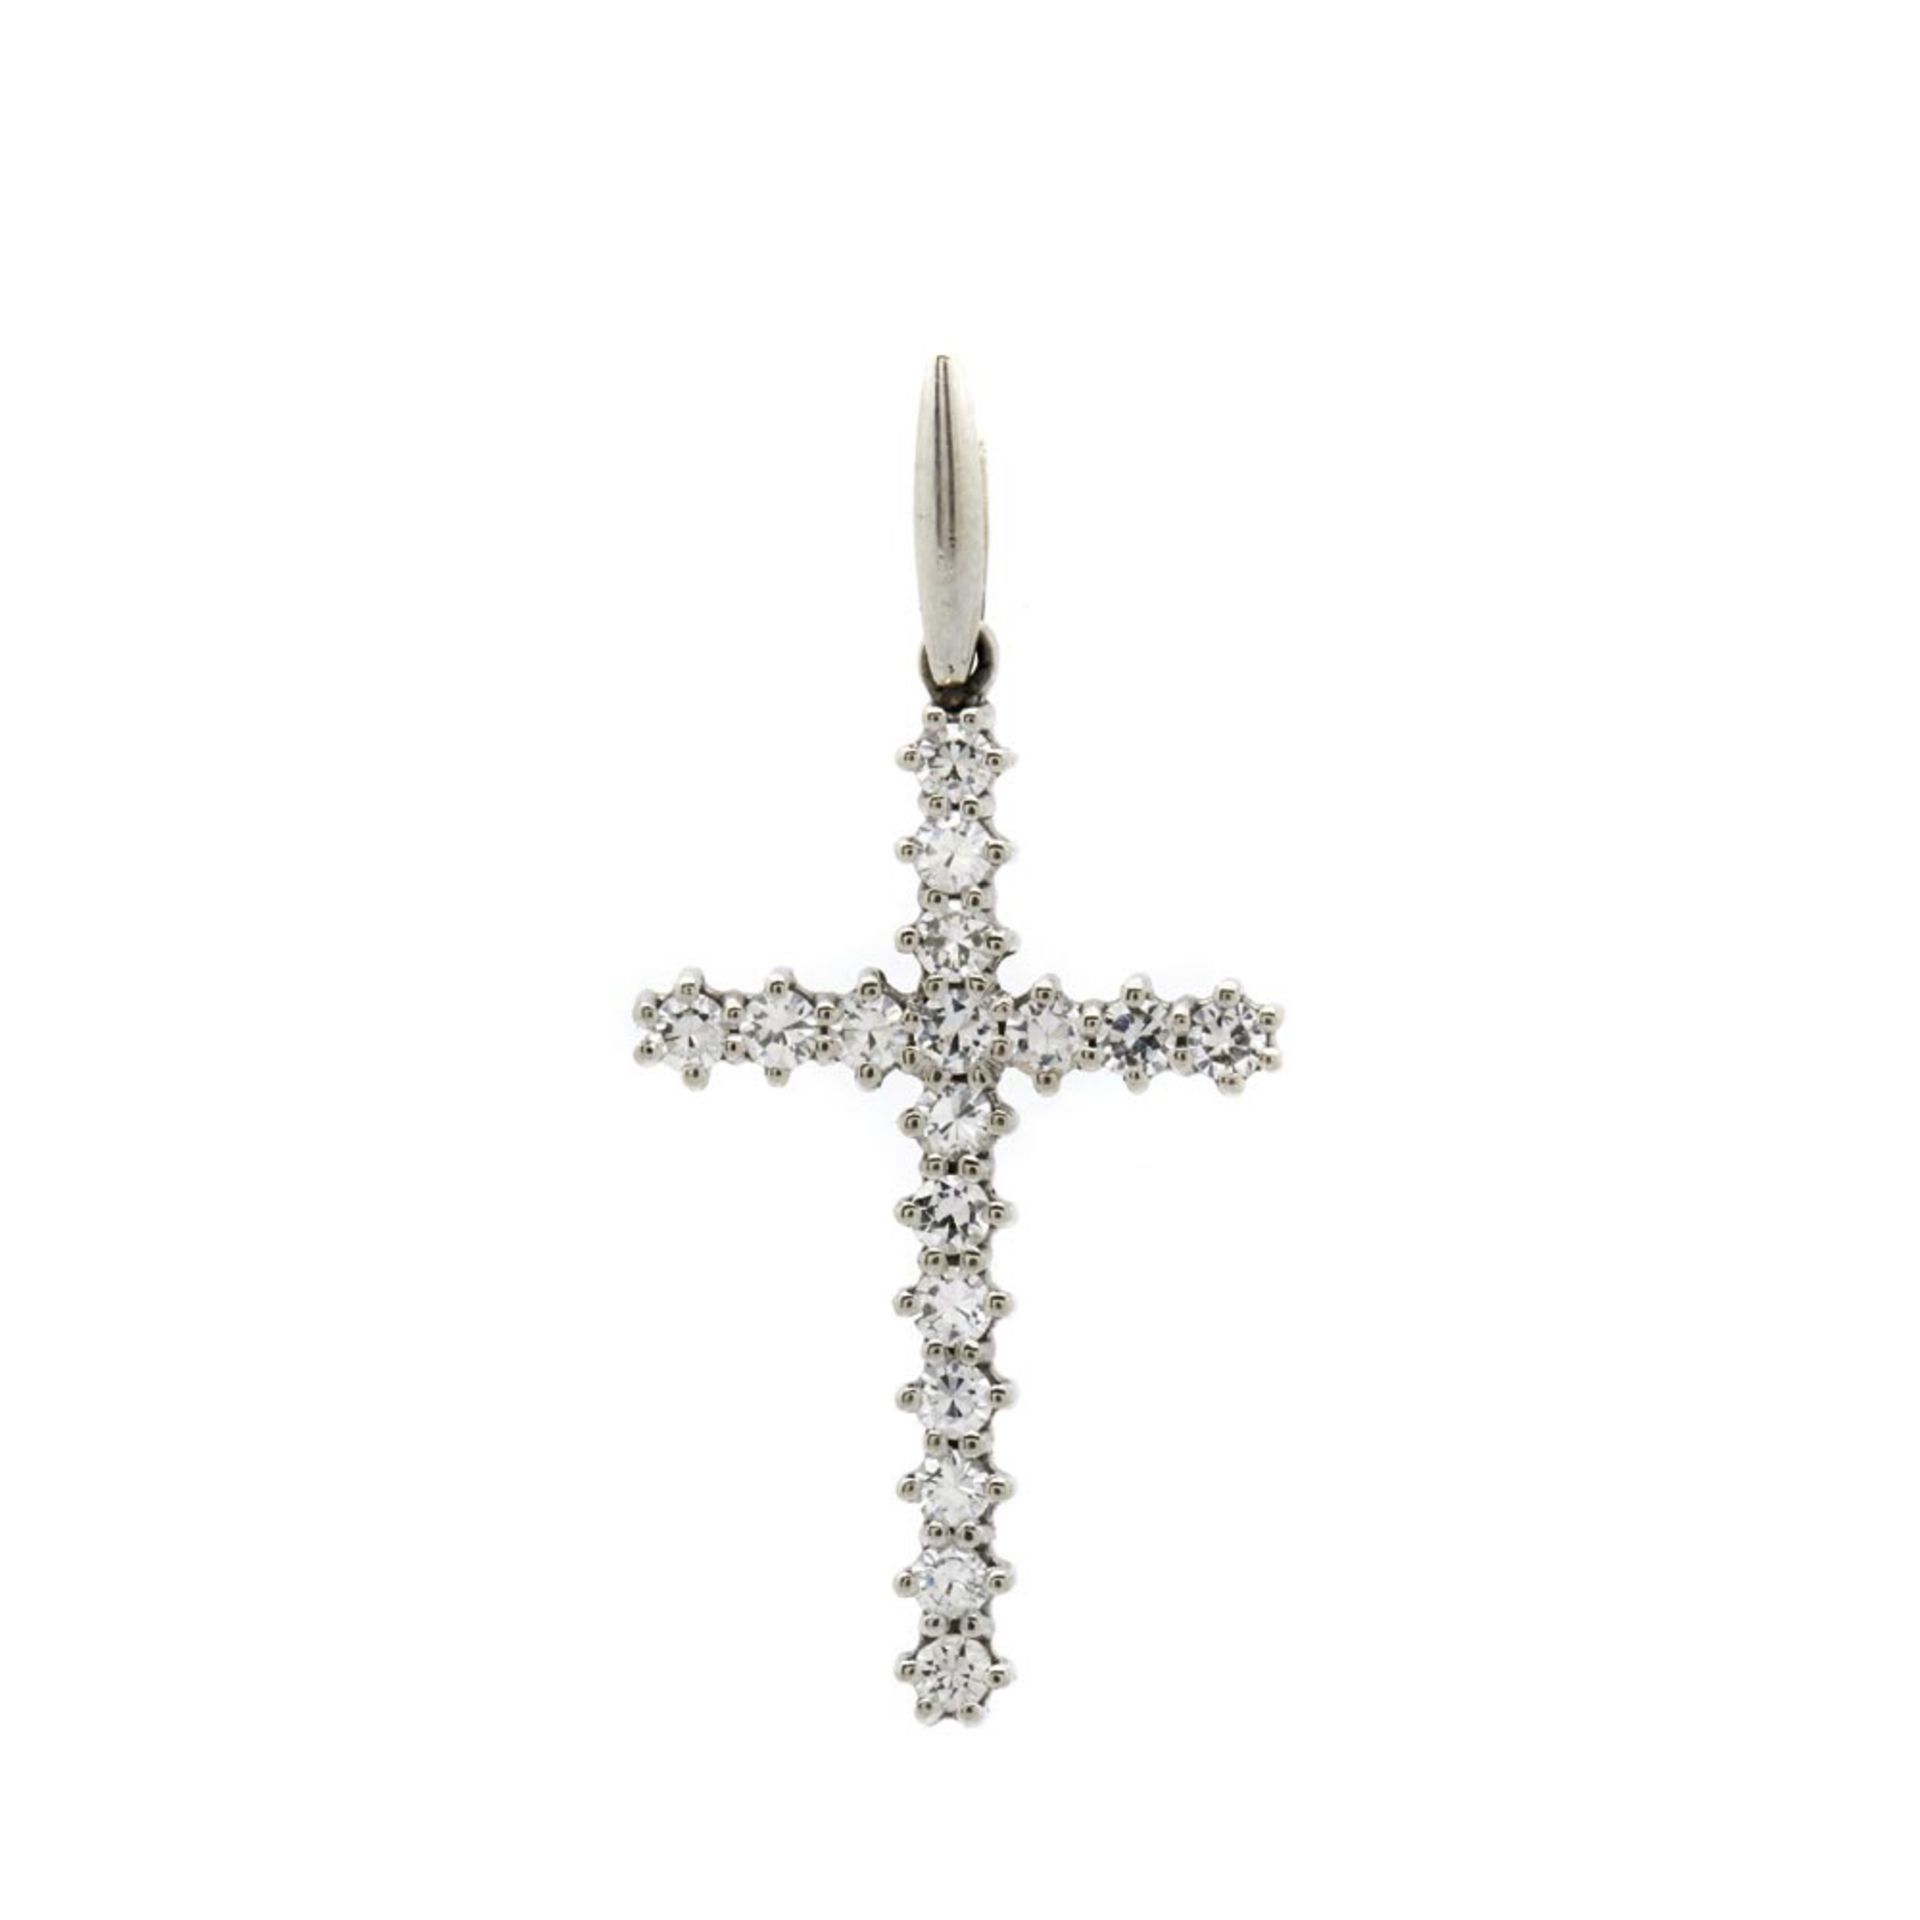 Colgante diseño cruz en oro blanco con diamantes talla brillante engastados en garras. 2 x 4 cm.